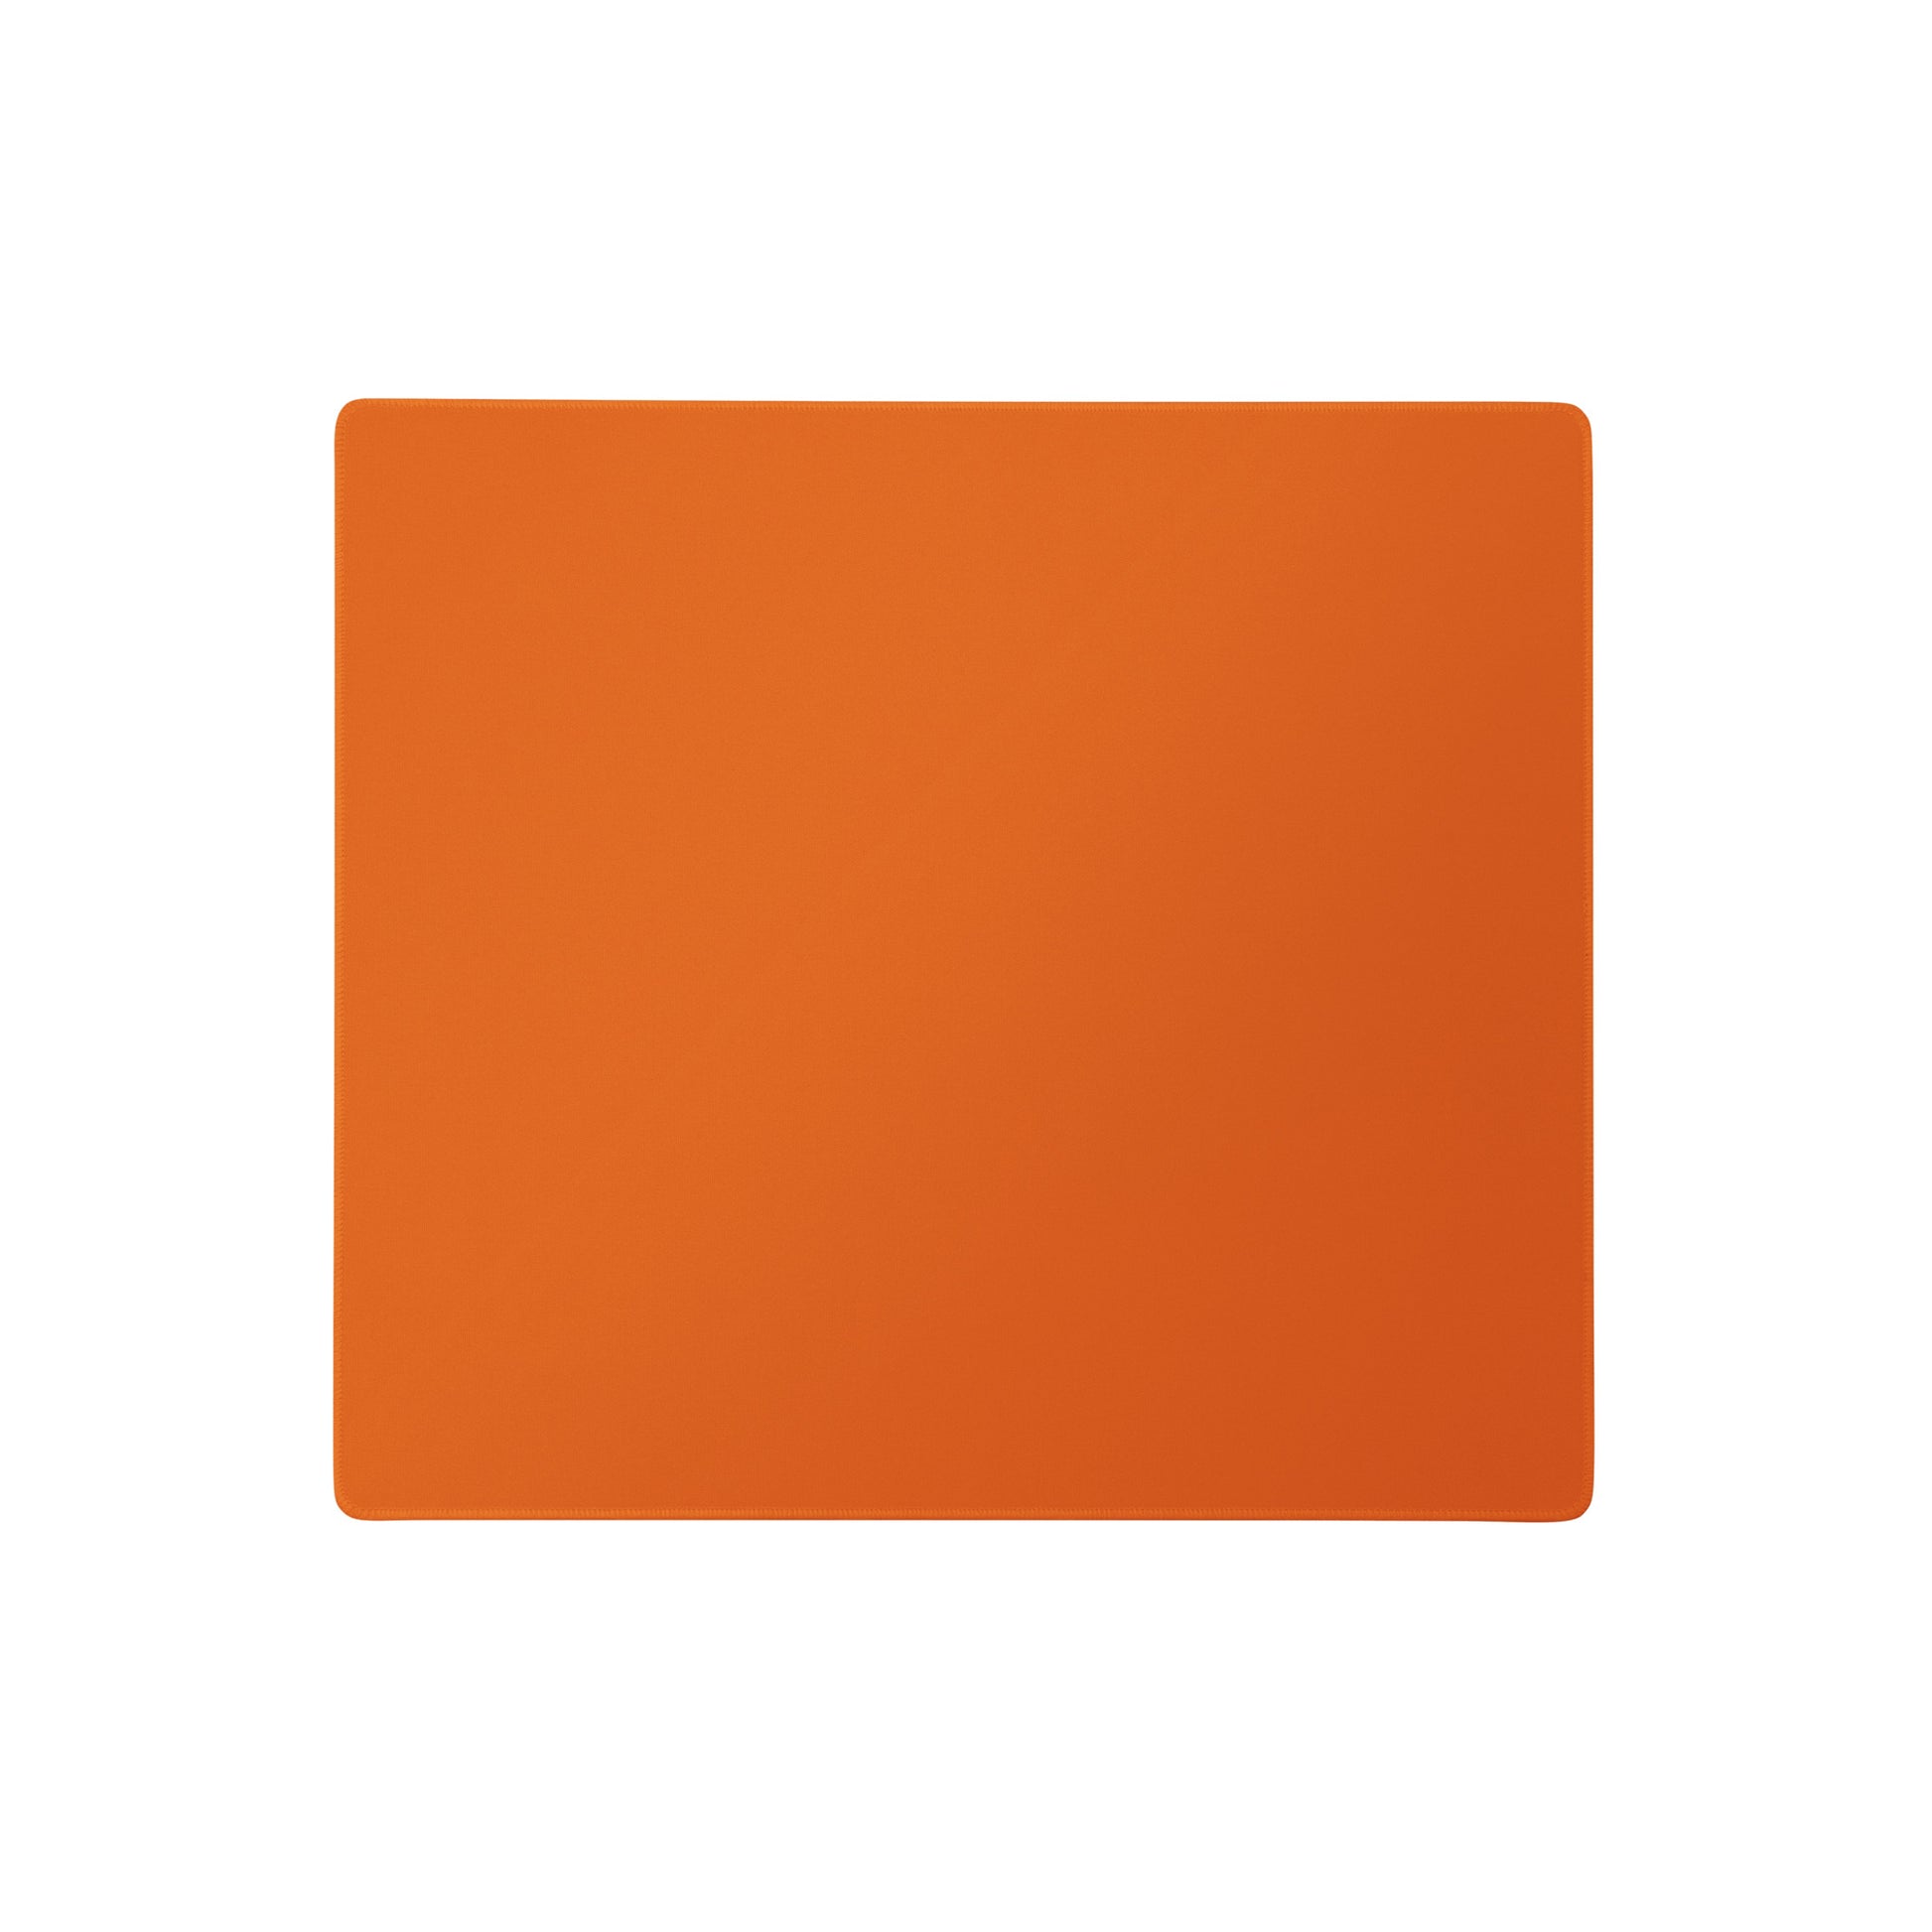 An 18" x 16" orange gaming desk pad.